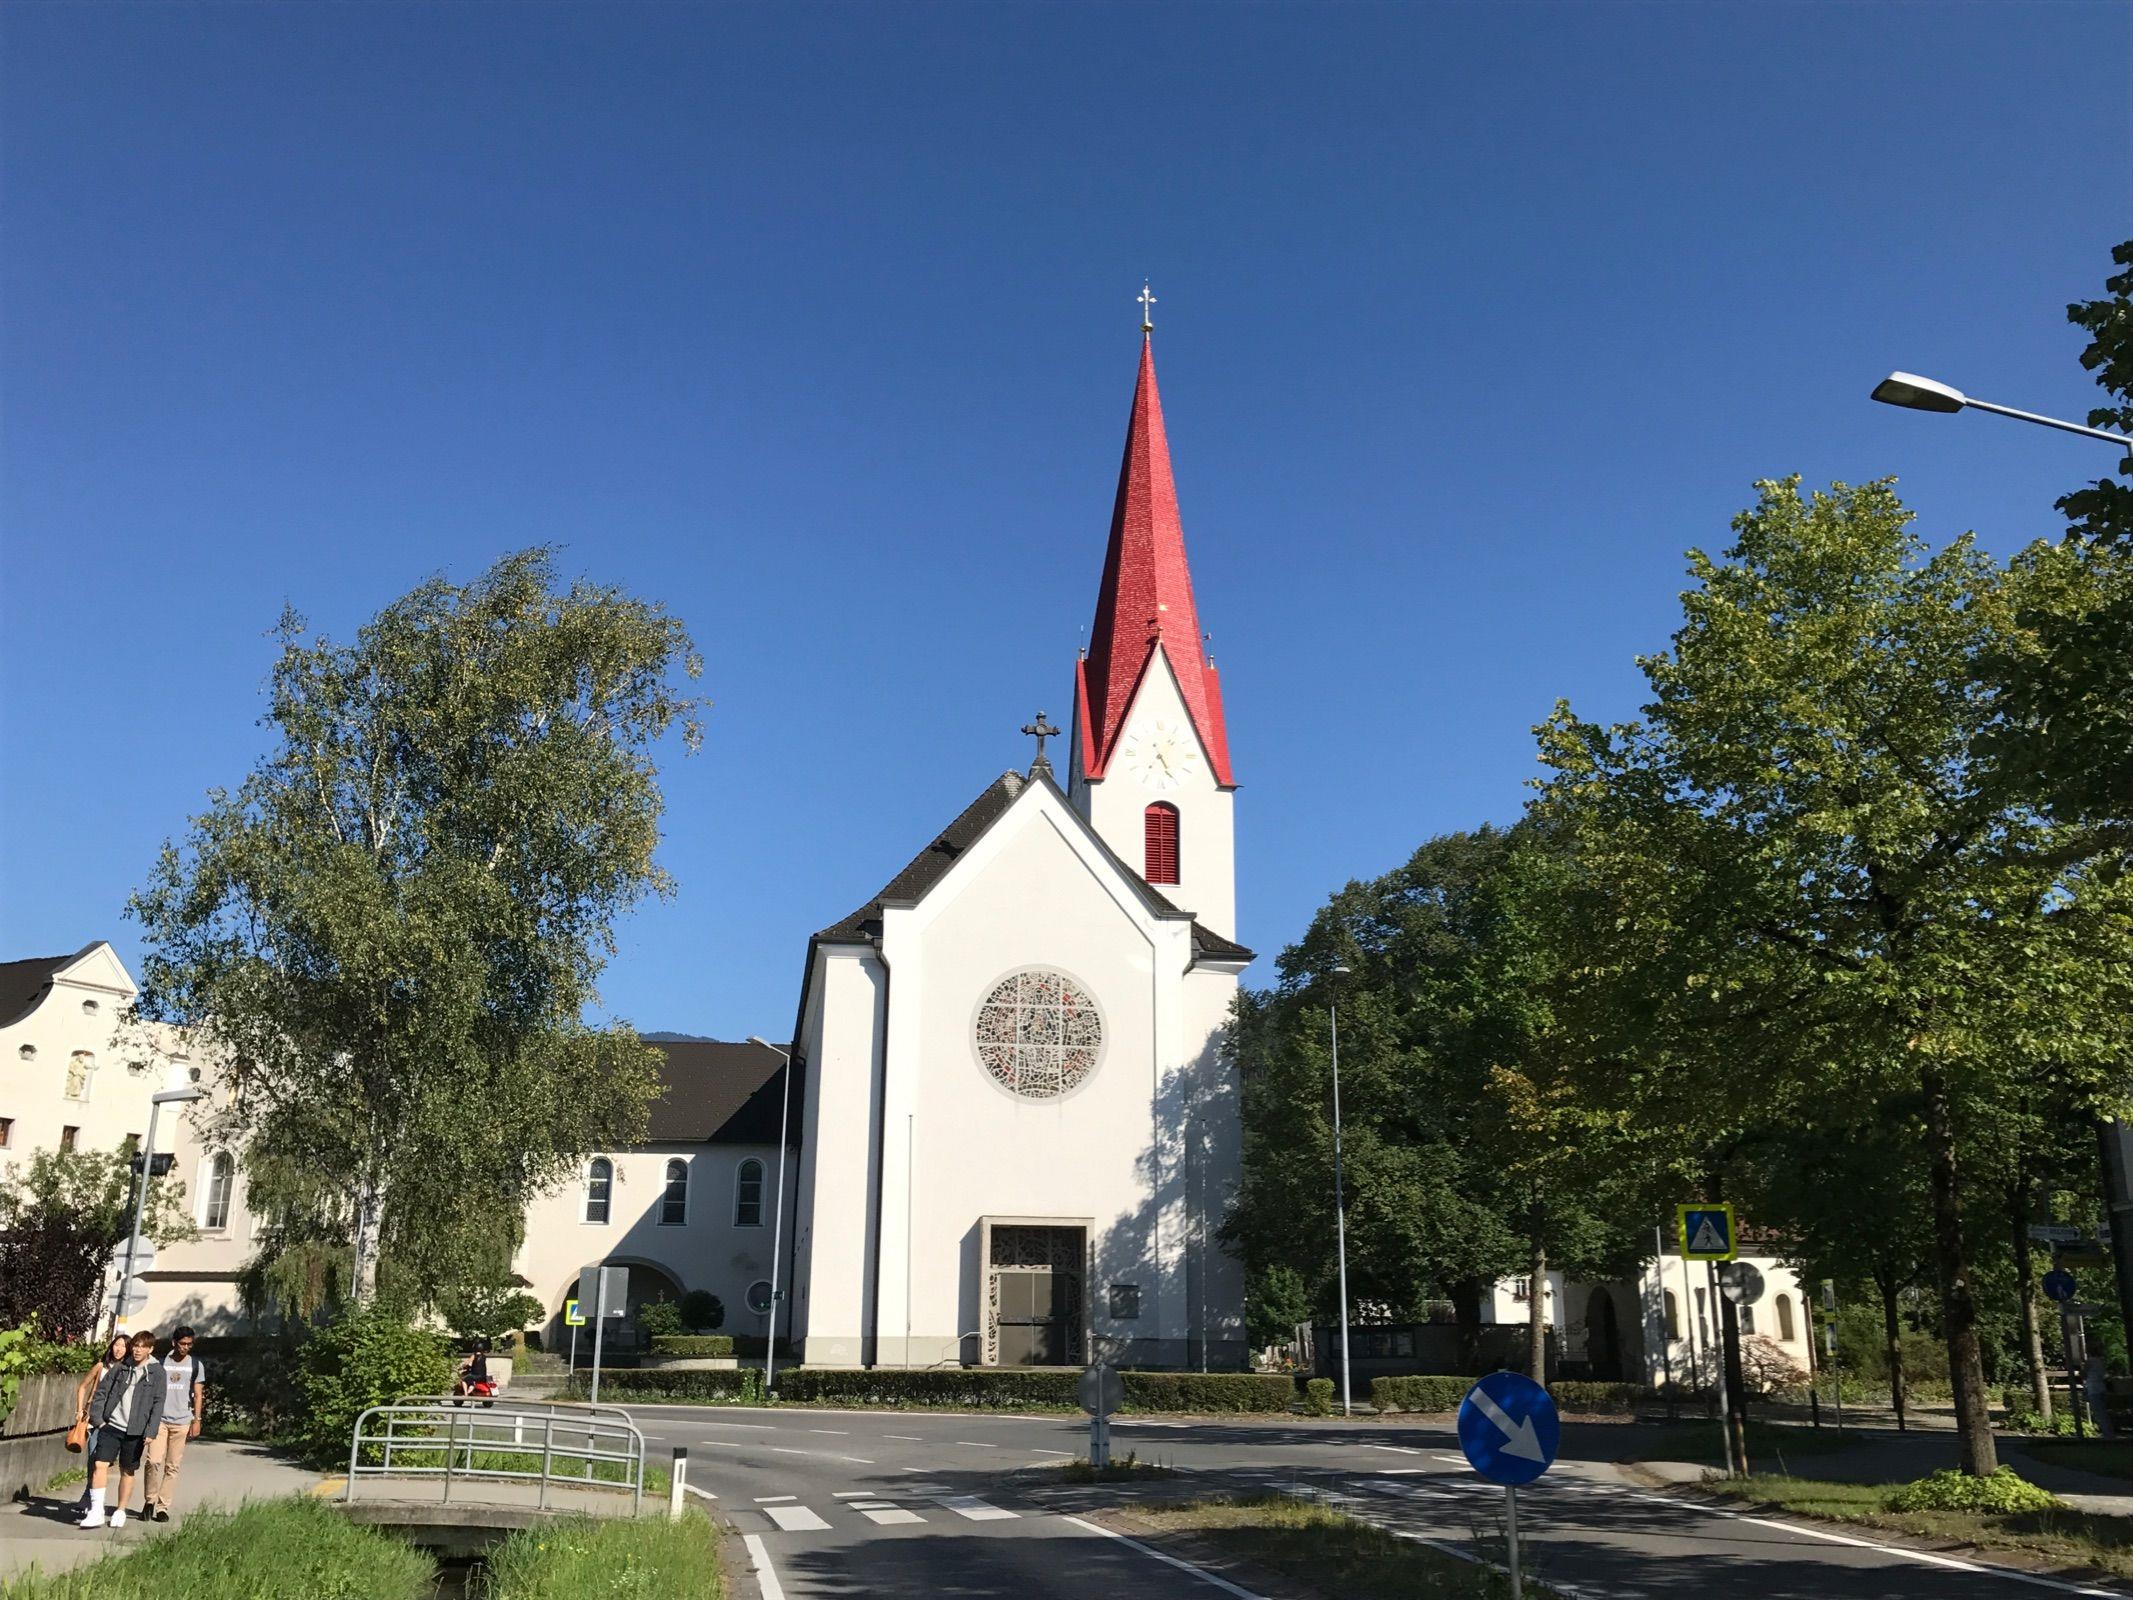 Weithin sichtbar strahlt nun der renovierte Kirchturm von Altenstadt in den Farben Rot-Weiß.